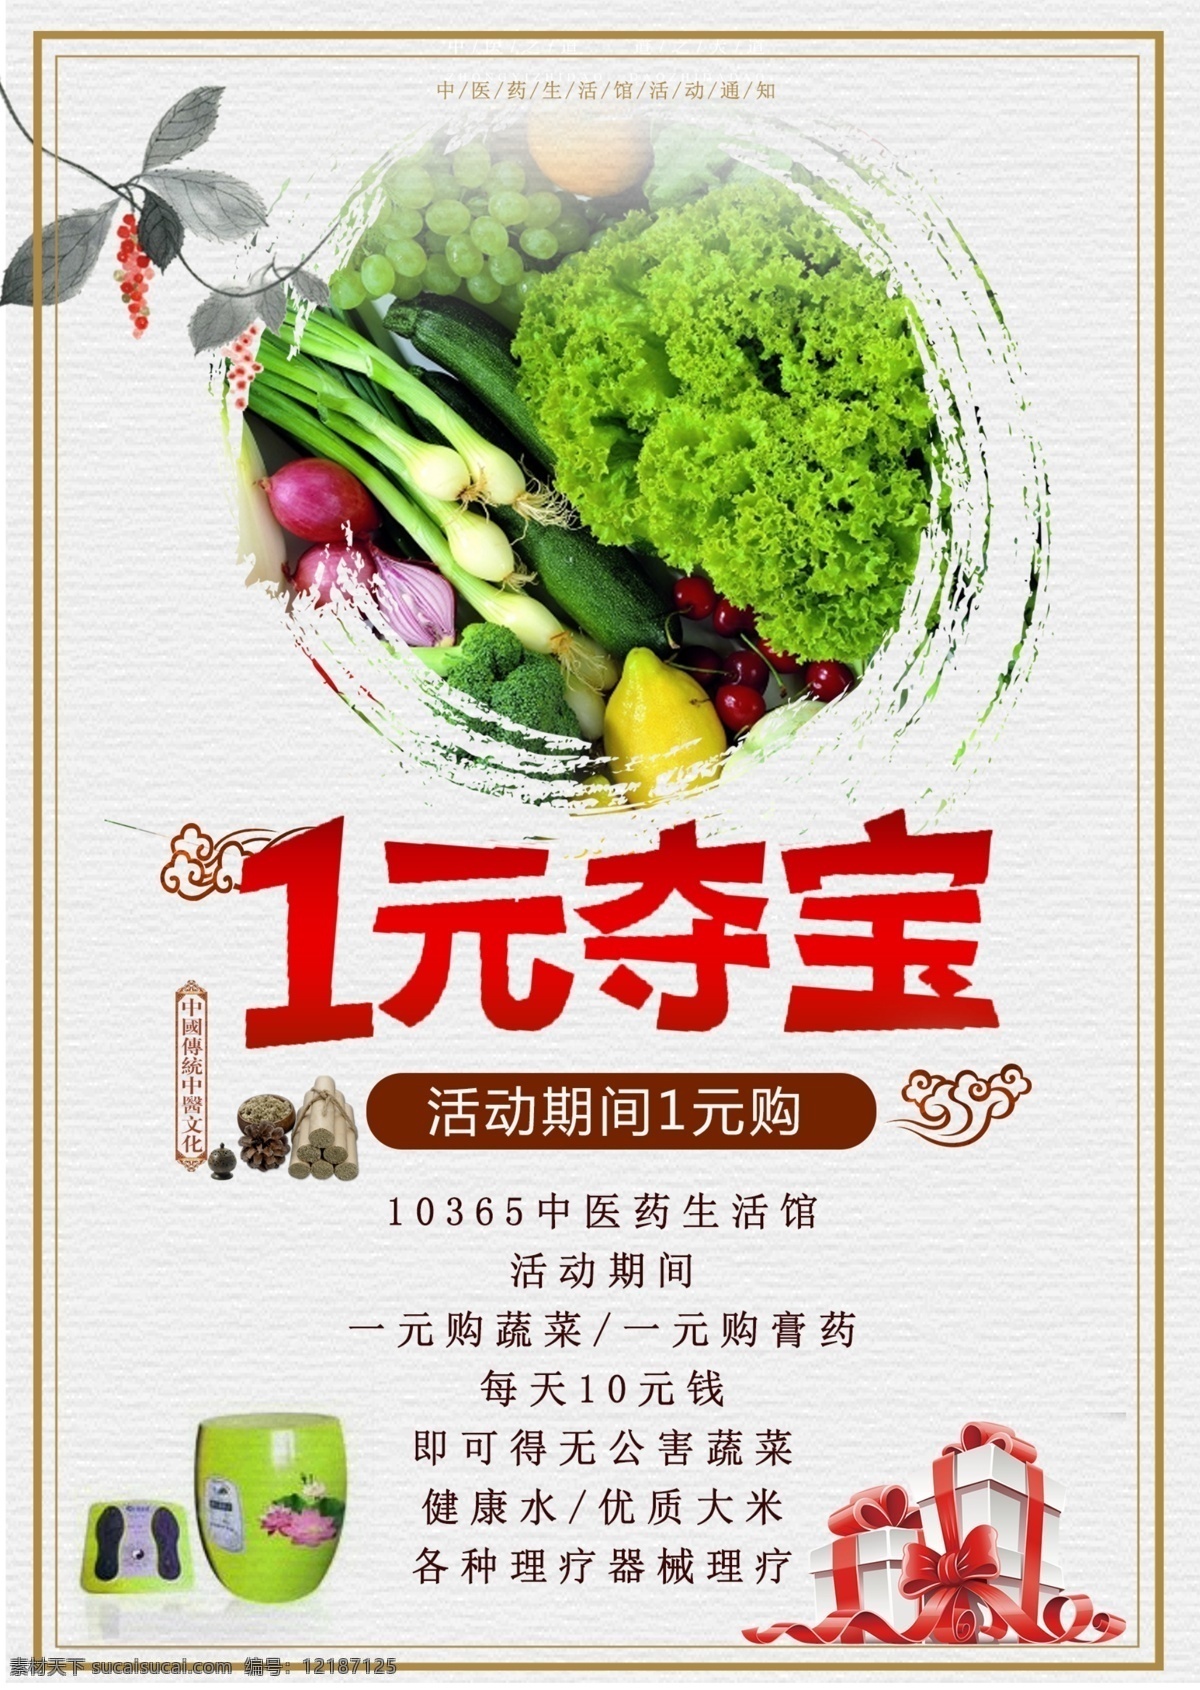 中医药 中国 风 宣传 海报 促销 蔬菜 养生 中国风 展板 一元购